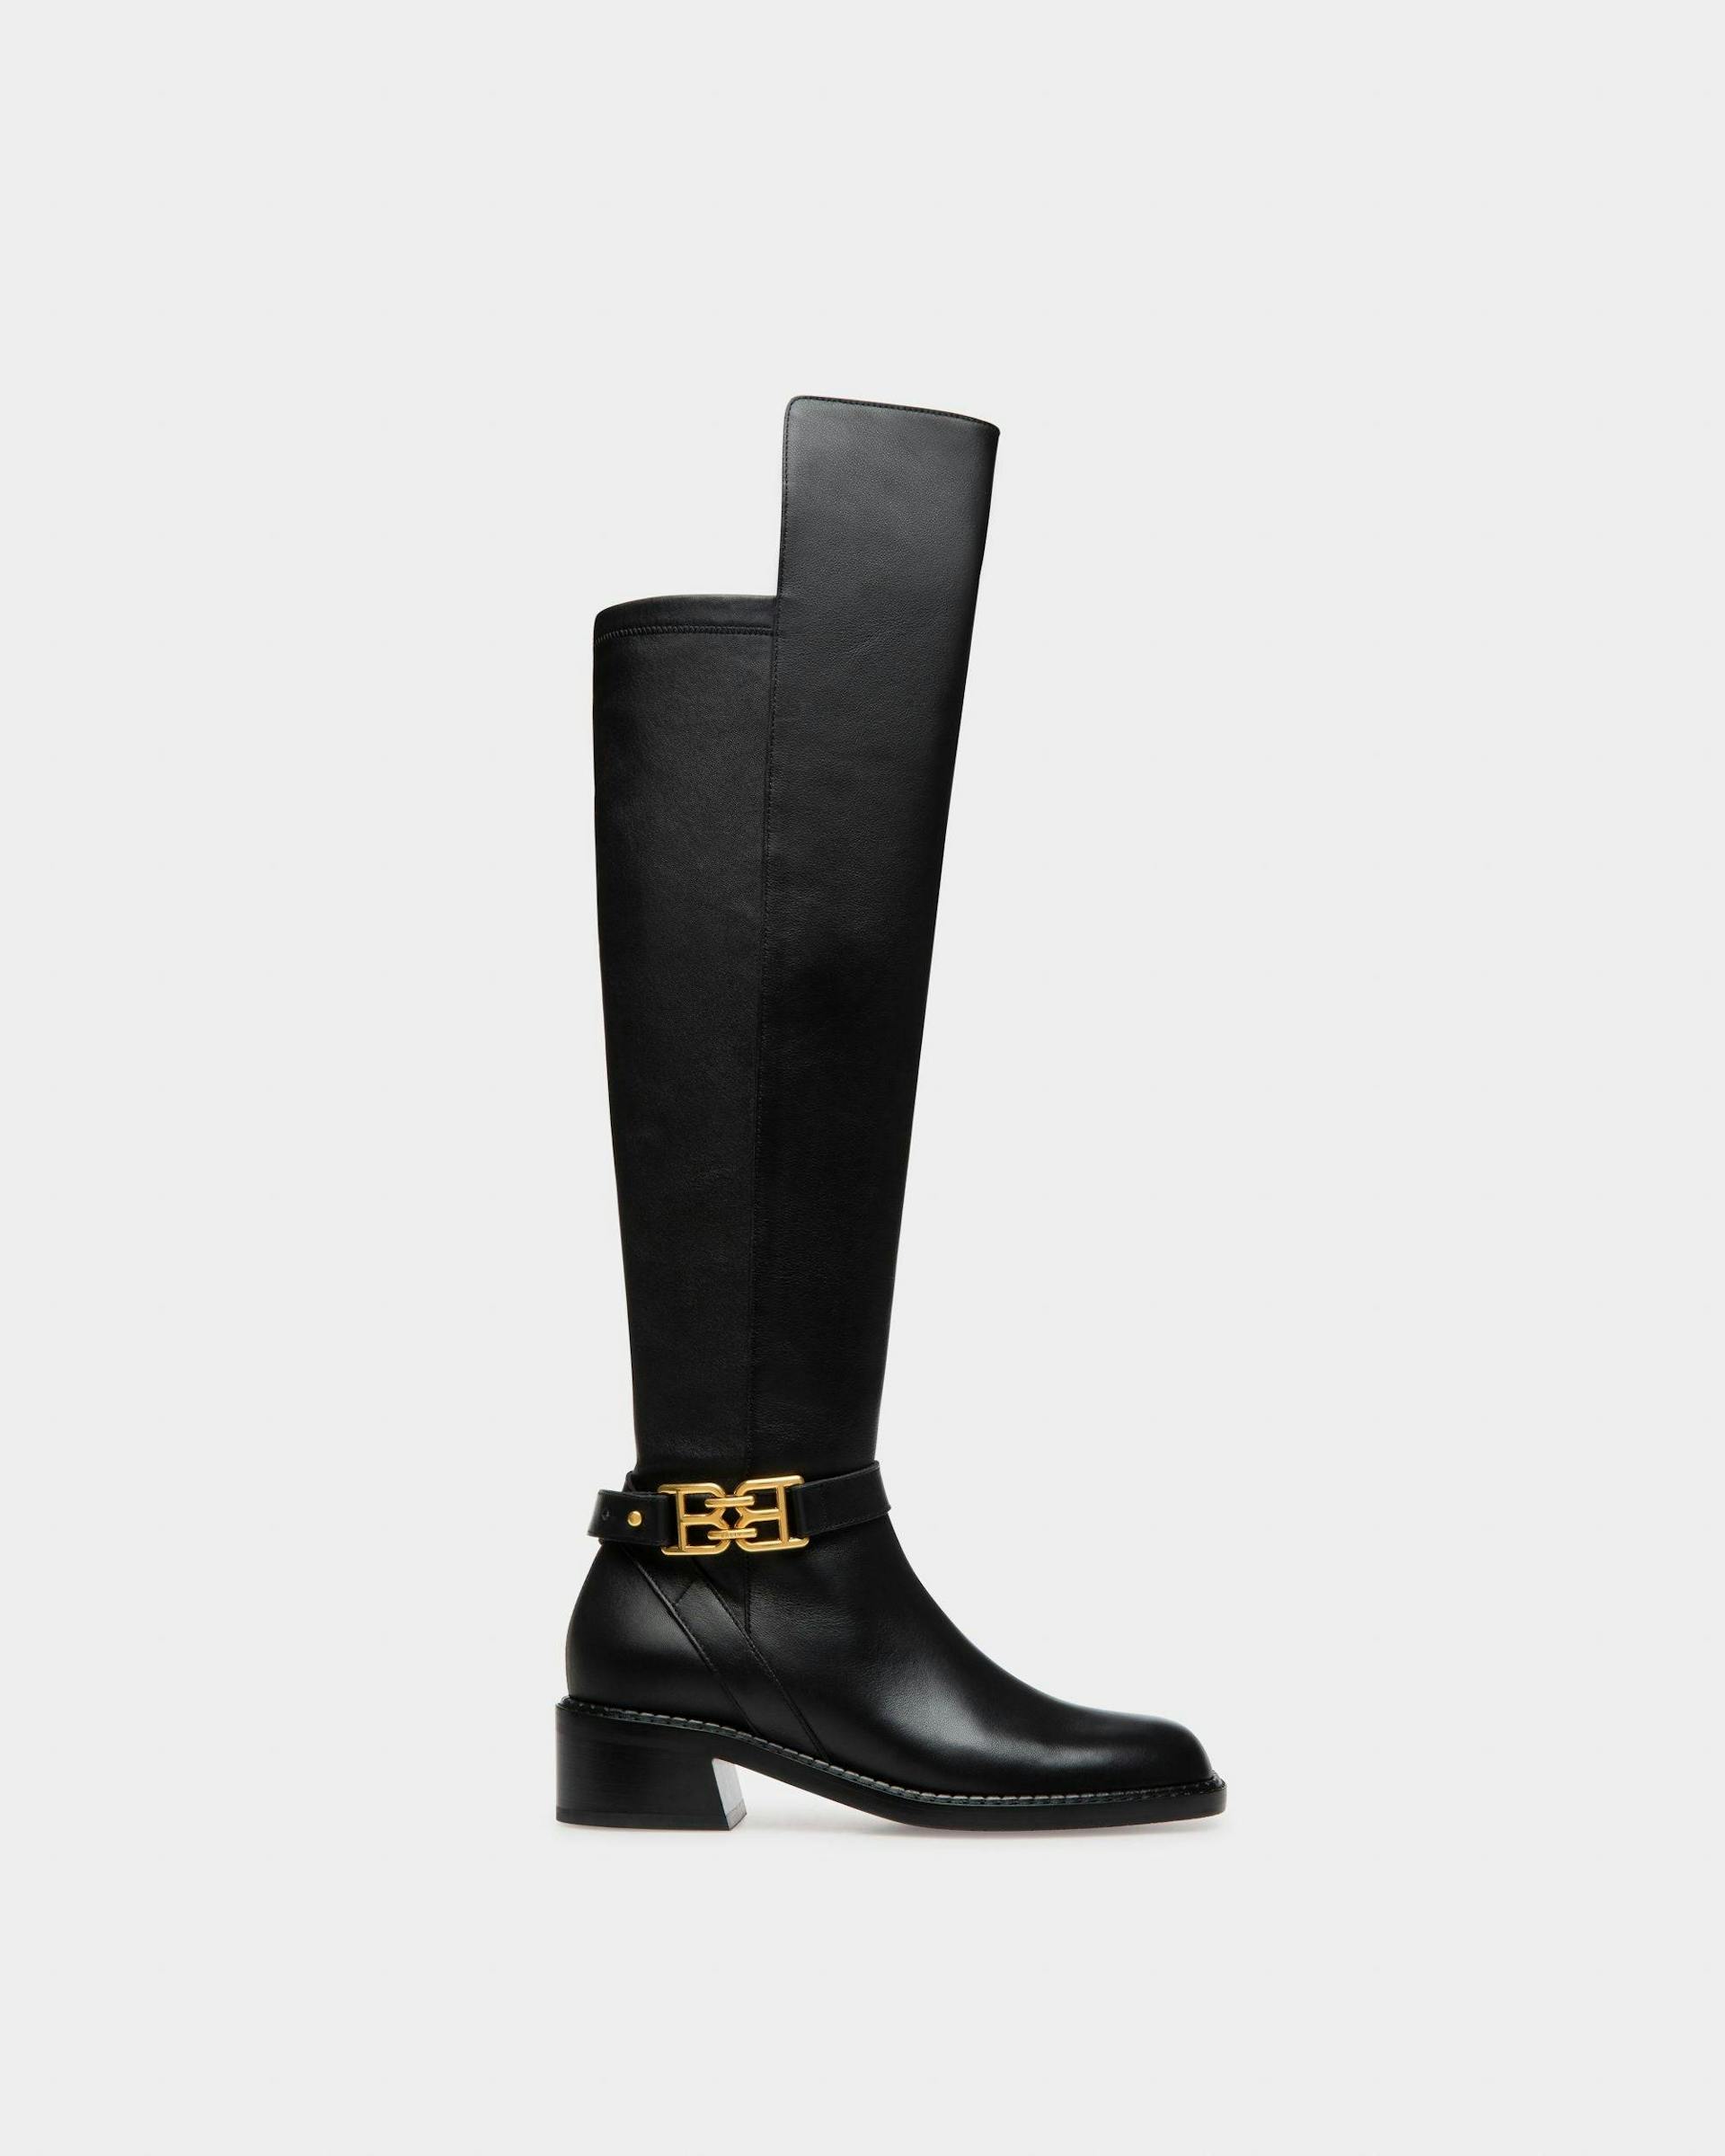 Eloire Leather Long Boots In Black - Women's - Bally - 01